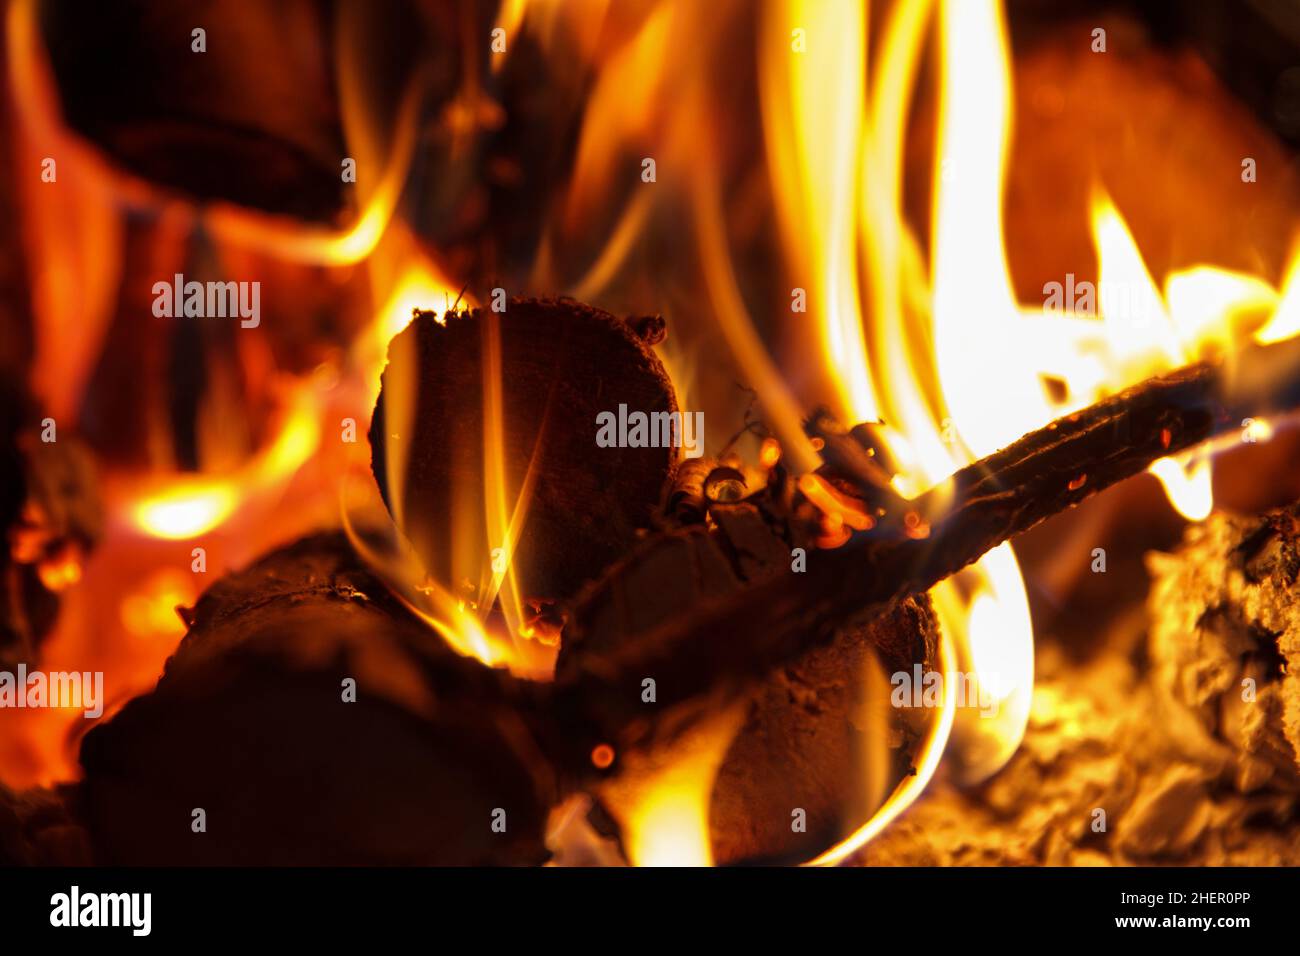 Helles Feuer der hohen Temperatur aus dem Brennholz brennt im Kamin,  romantisch Stockfotografie - Alamy